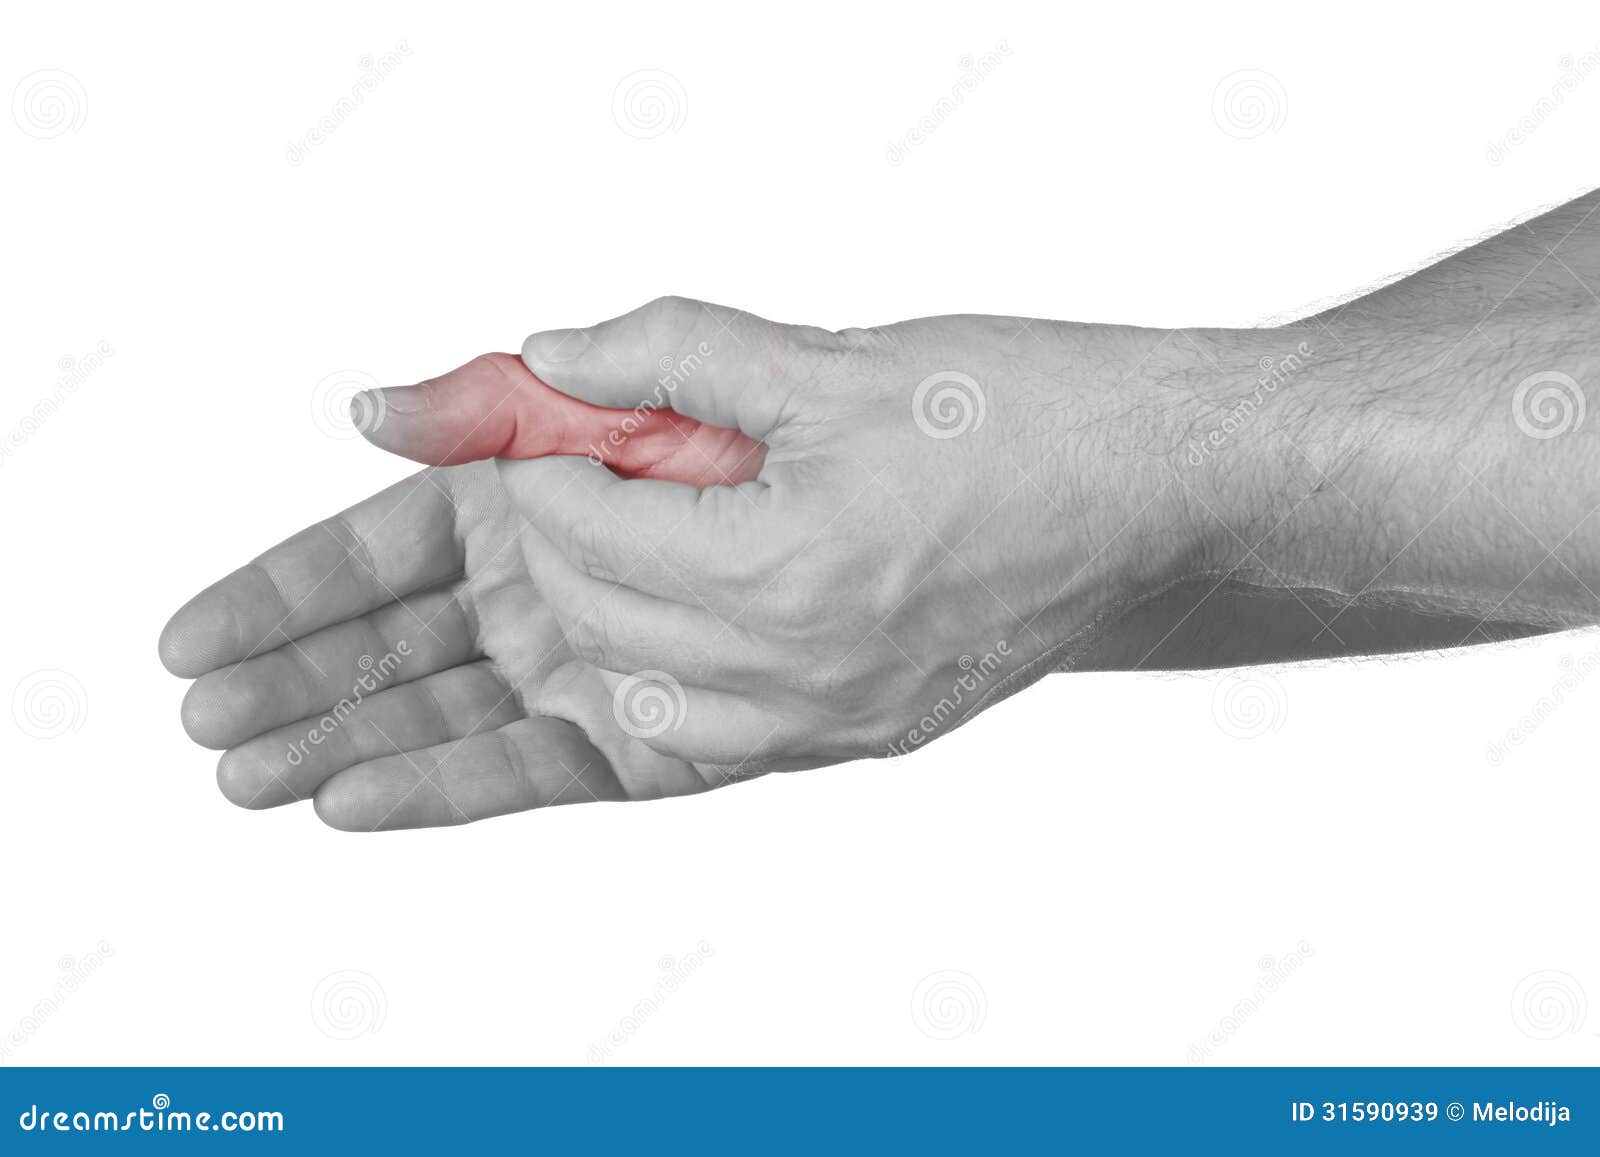 Болит основание сустава большого пальца. Сустав большого пальца руки. Боль в суставе большого пальца руки. Болит сустав большого пальца на руке. Болит сустав Болшево пальца на руке.